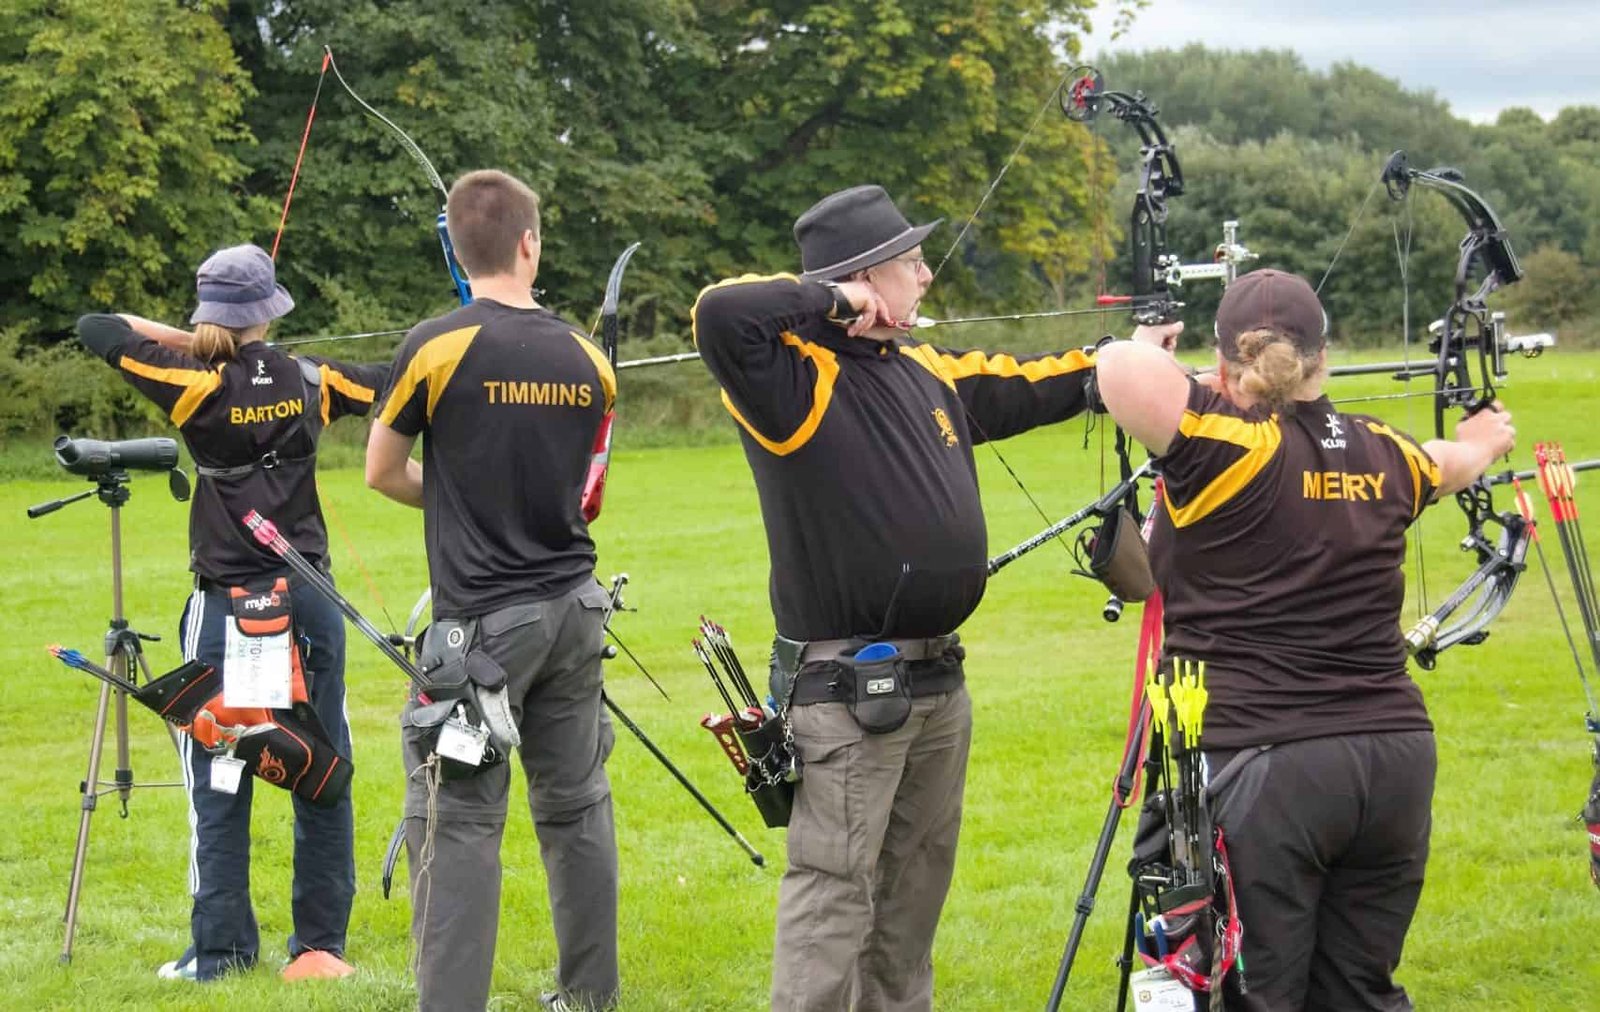 Archery GB